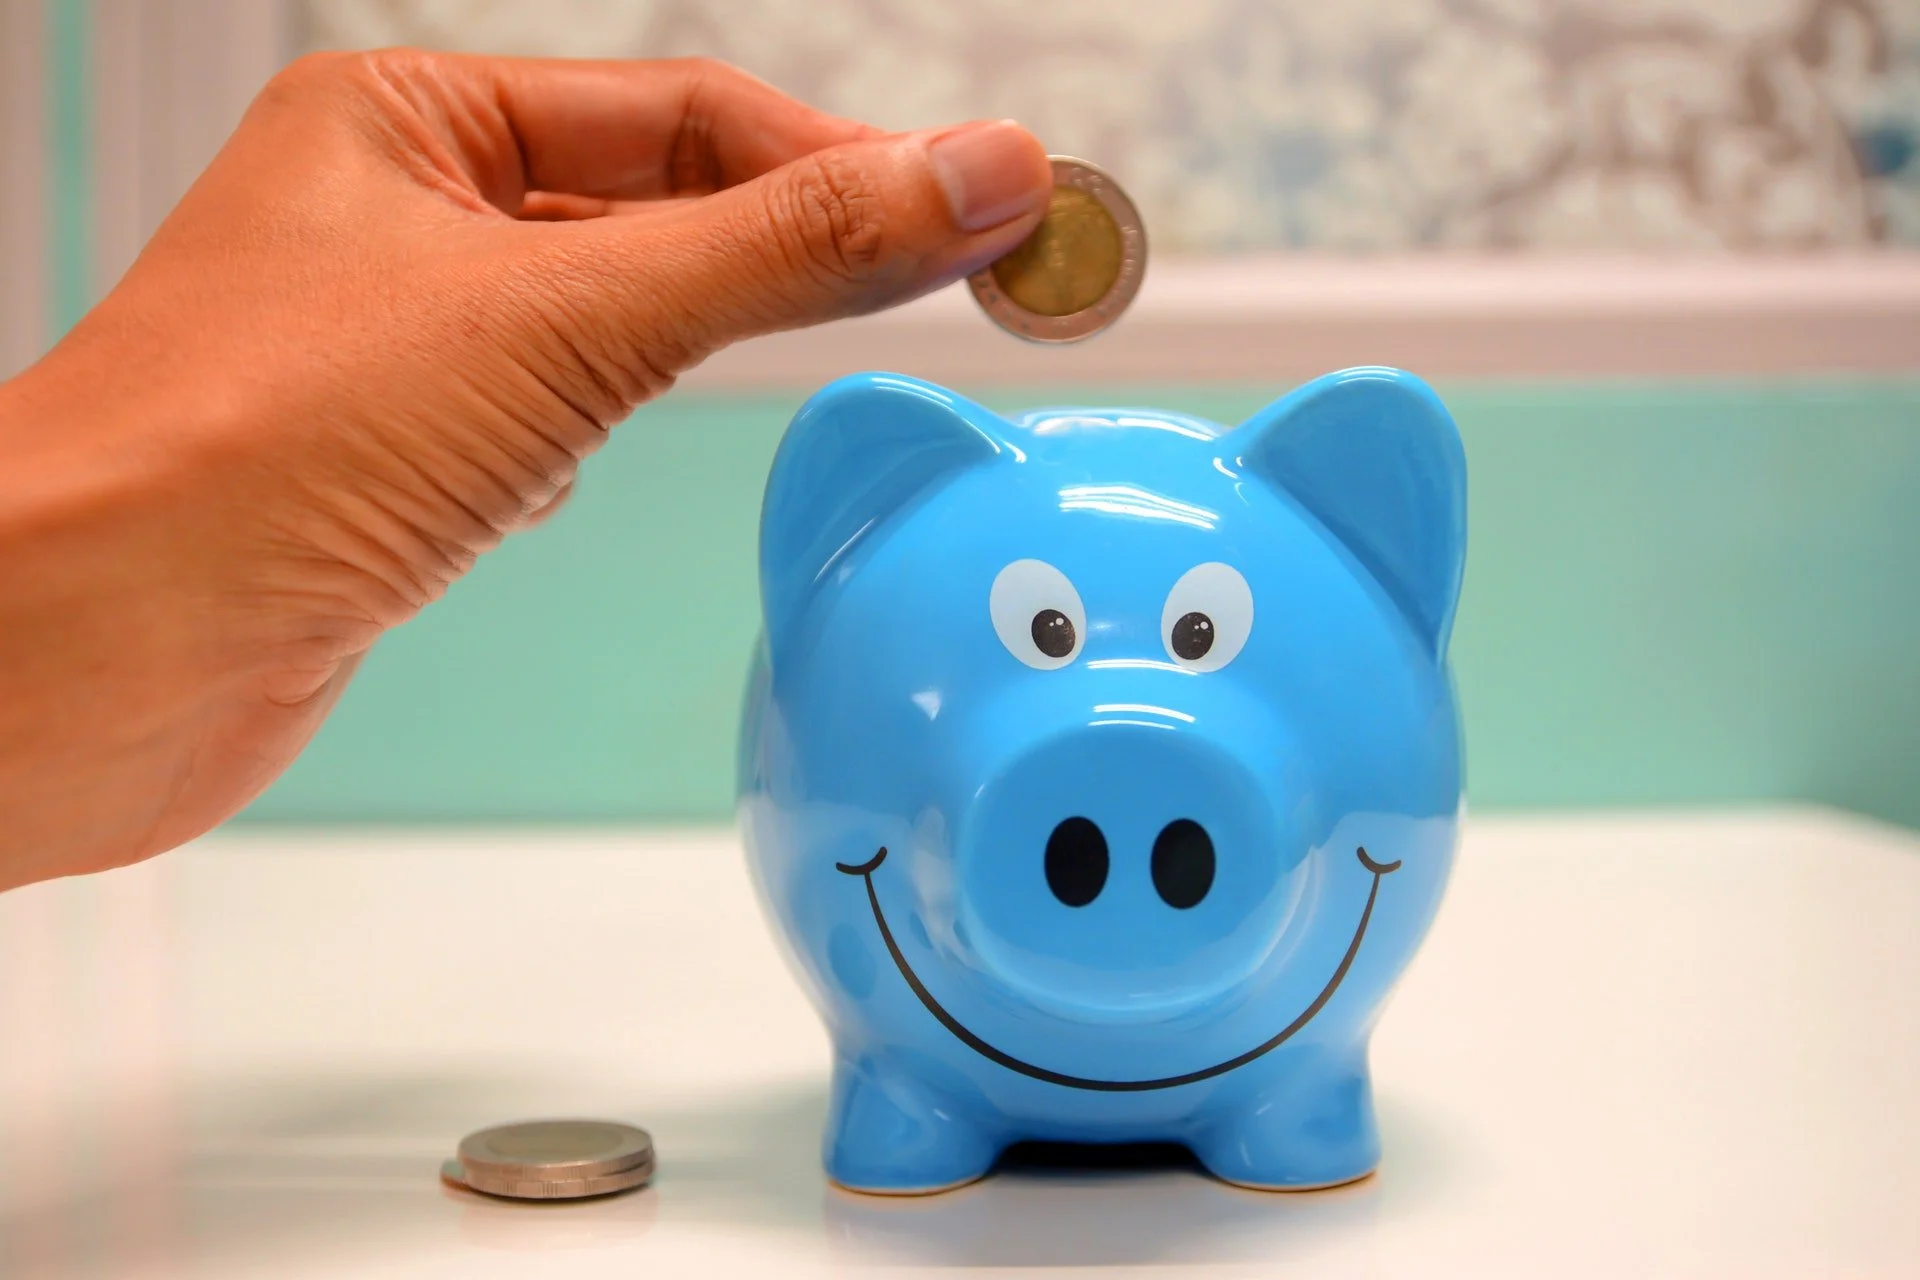 Saving pennies in a piggy bank